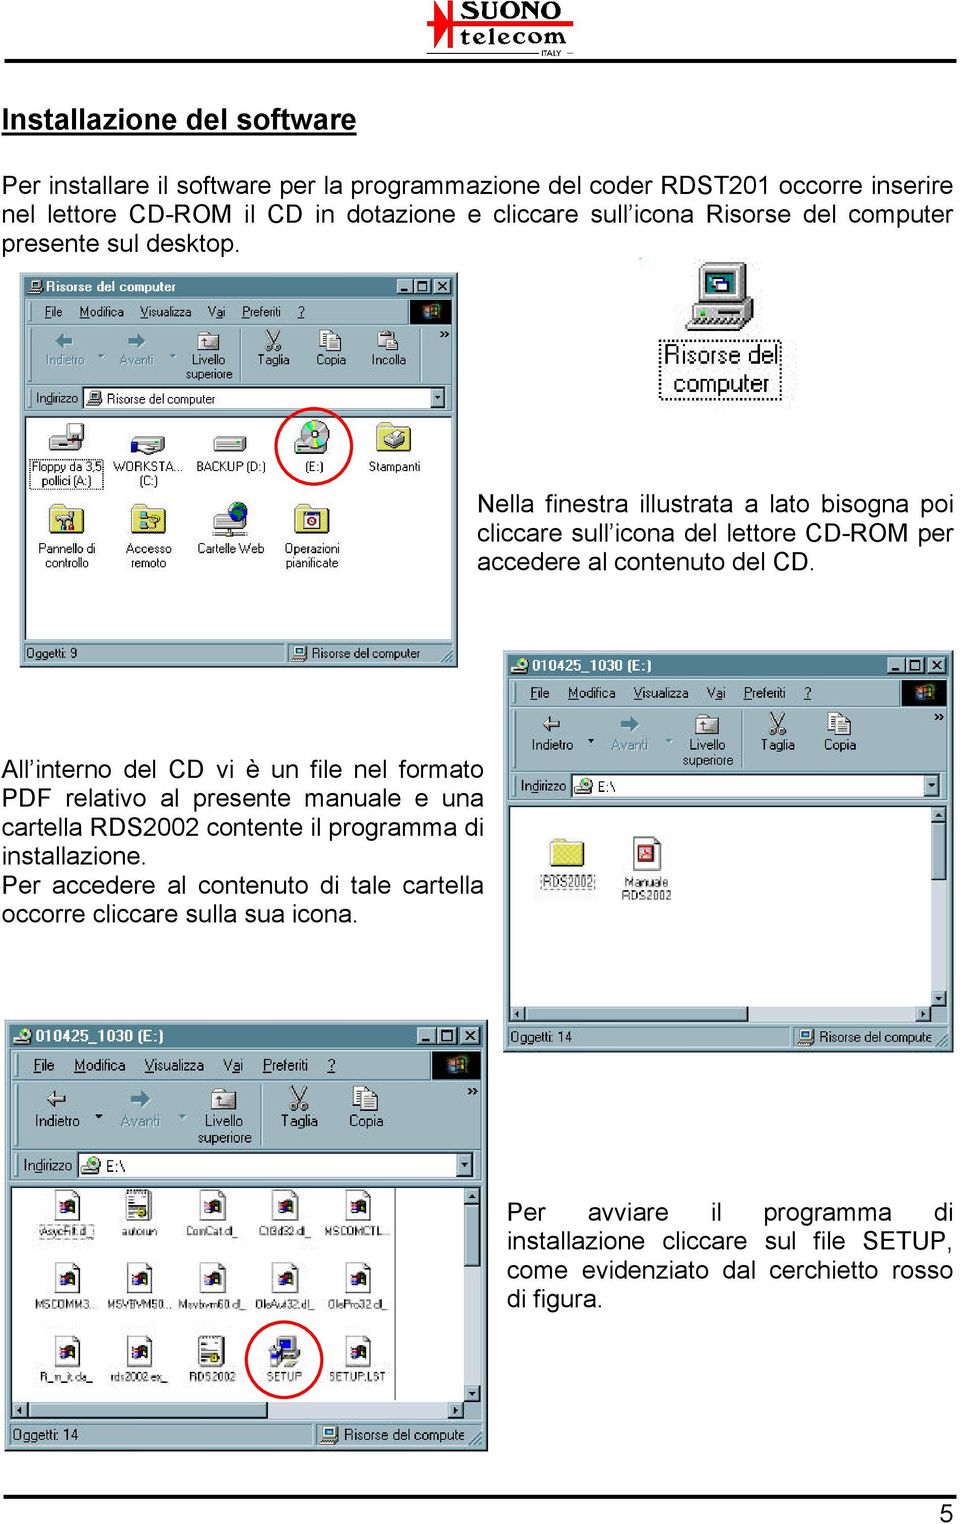 All interno del CD vi è un file nel formato PDF relativo al presente manuale e una cartella RDS2002 contente il programma di installazione.